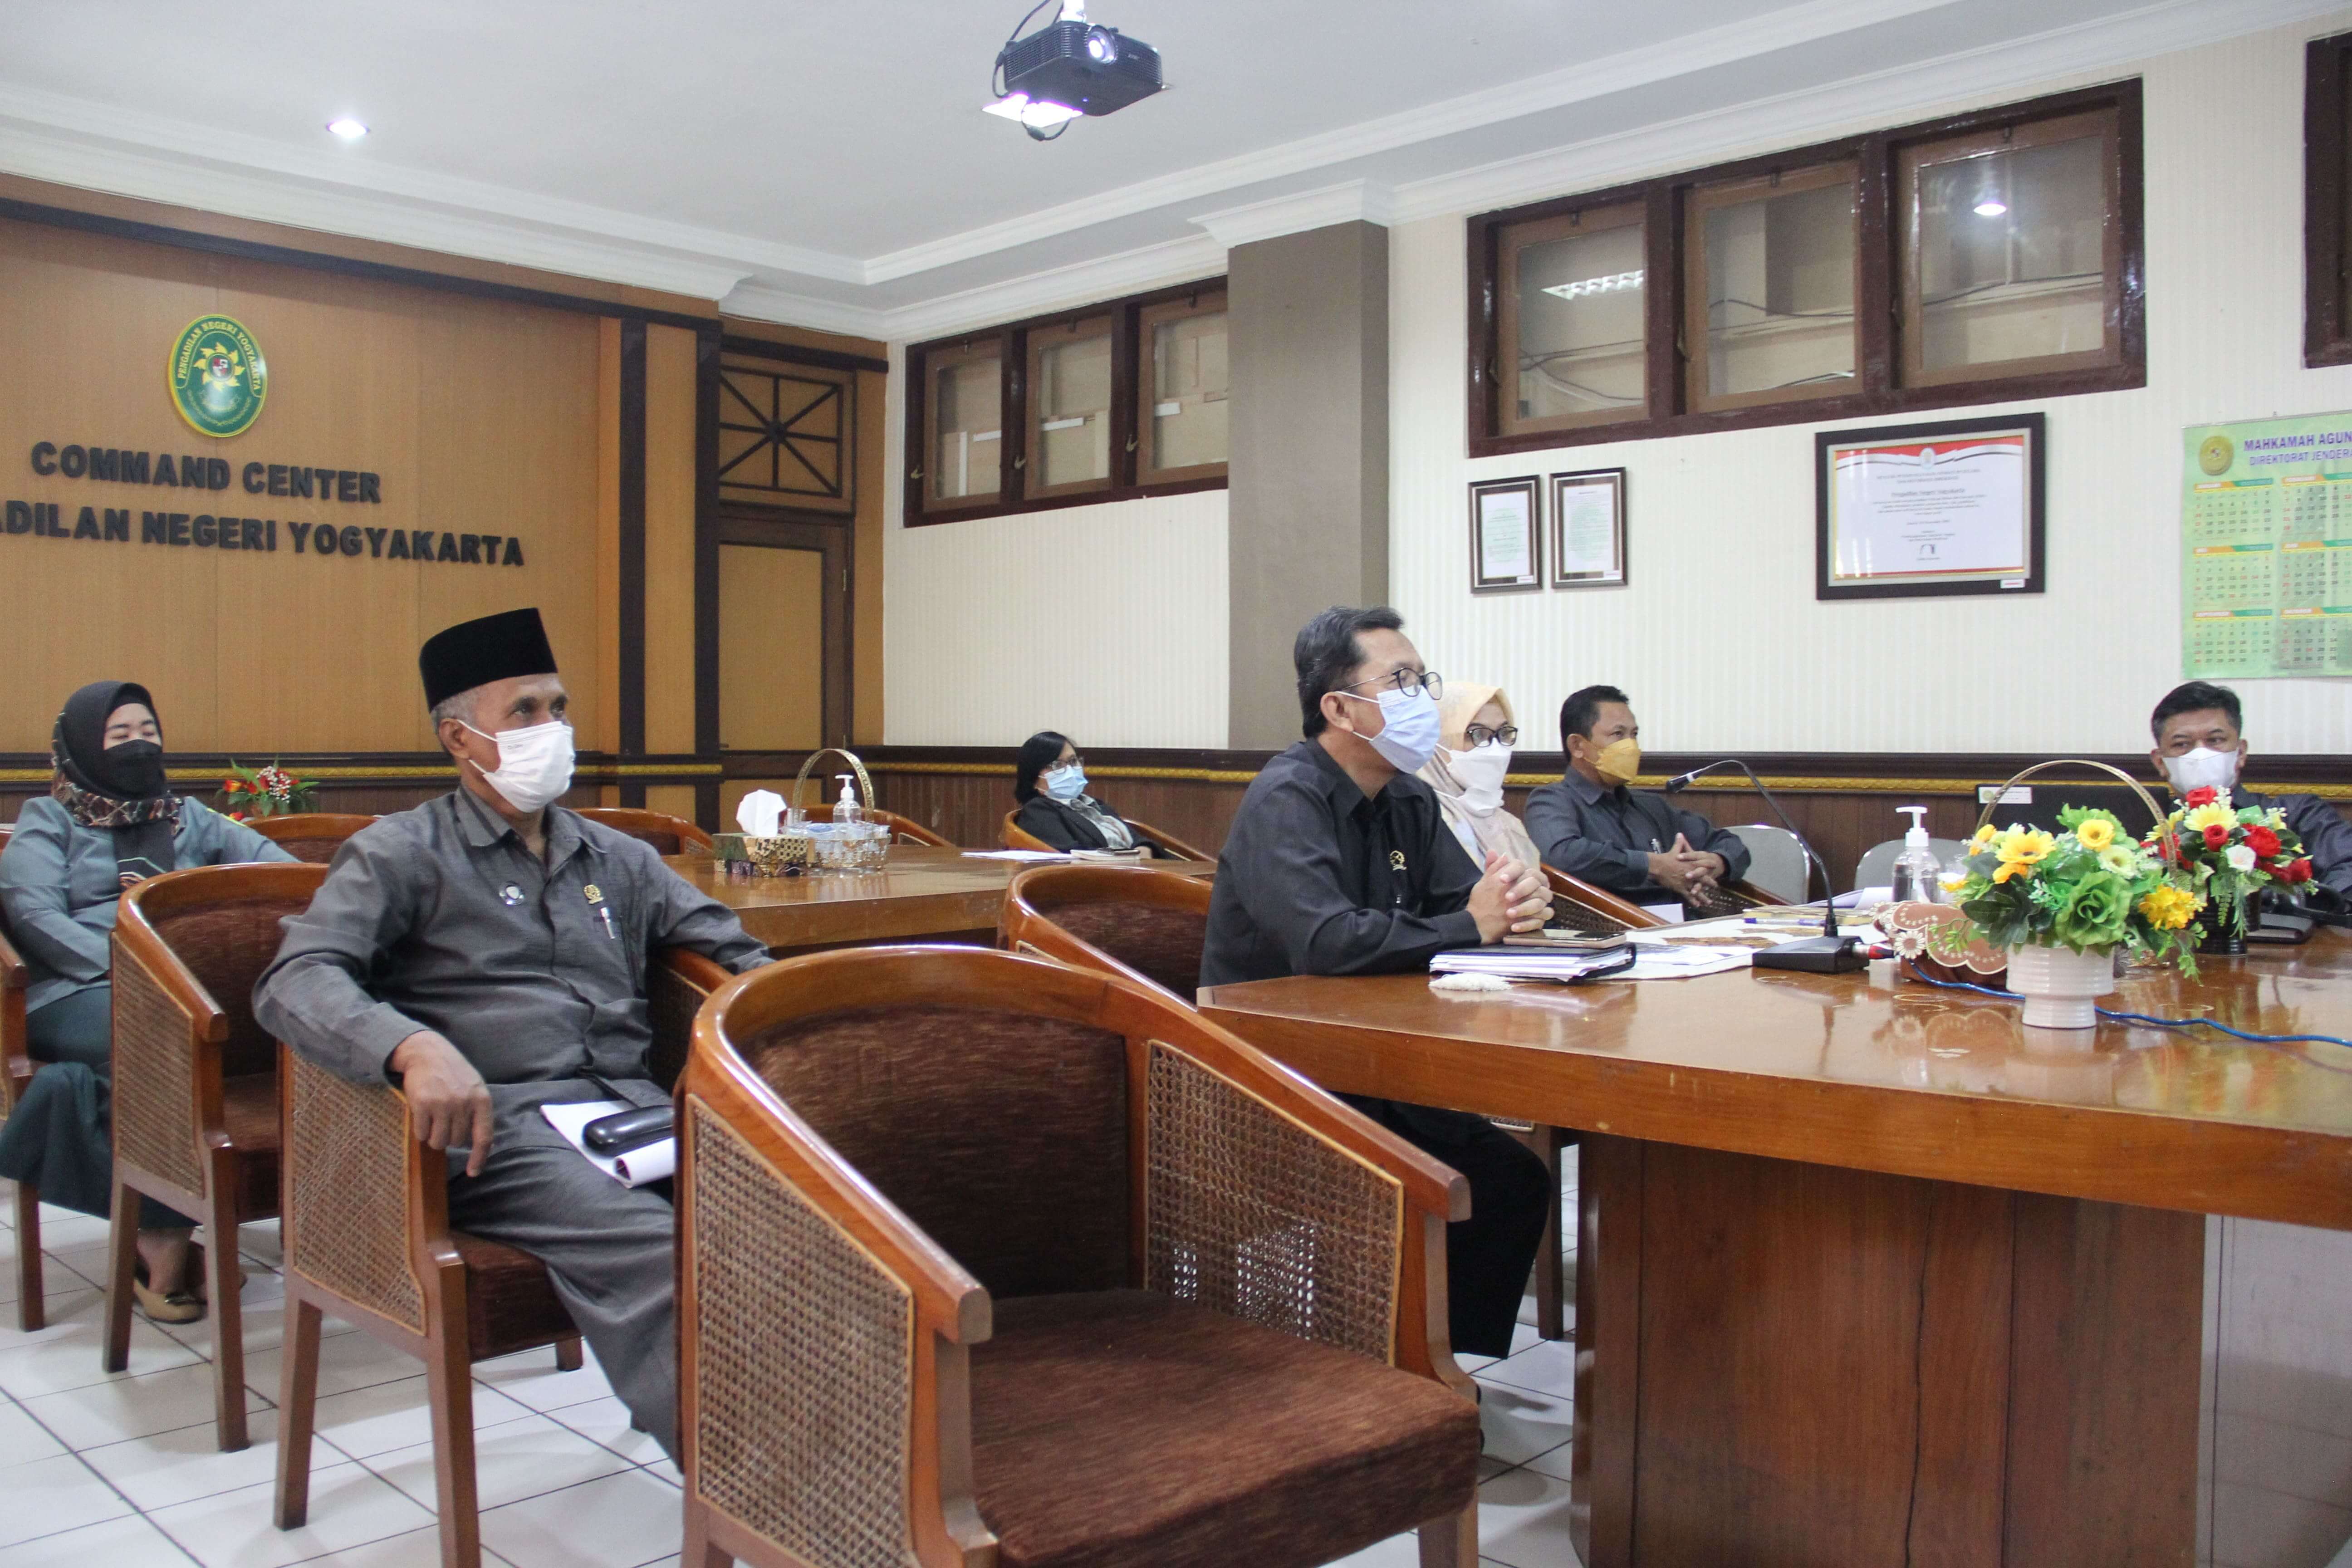 Pengadilan Negeri Yogyakarta Mengikuti Seminar Publik Bersama SAPDA